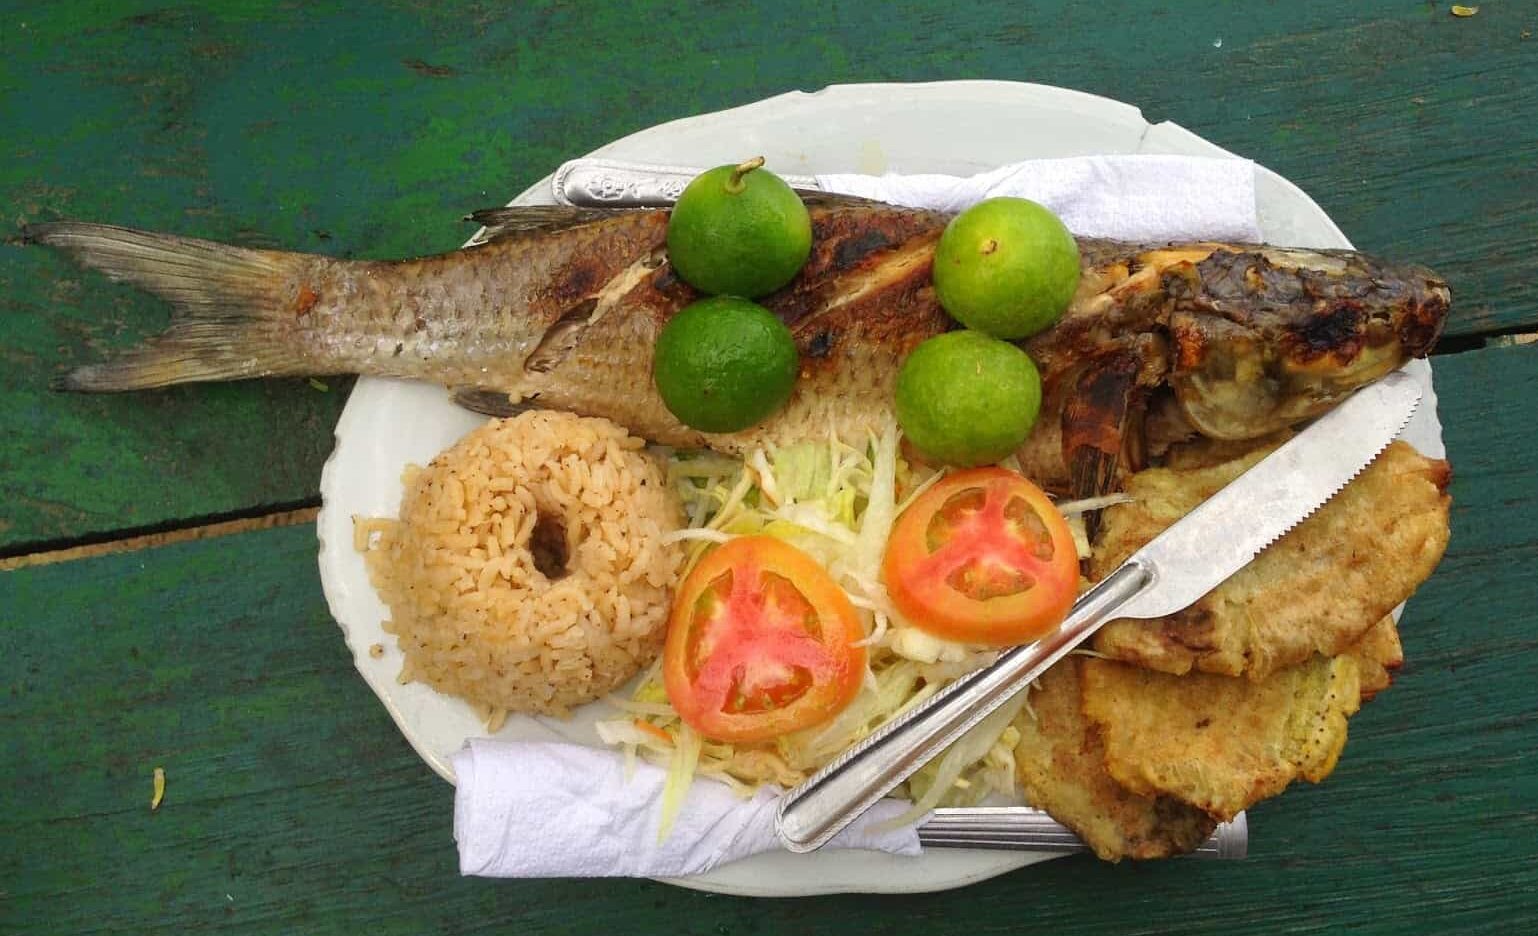 Fish lunch at Playa Cristal